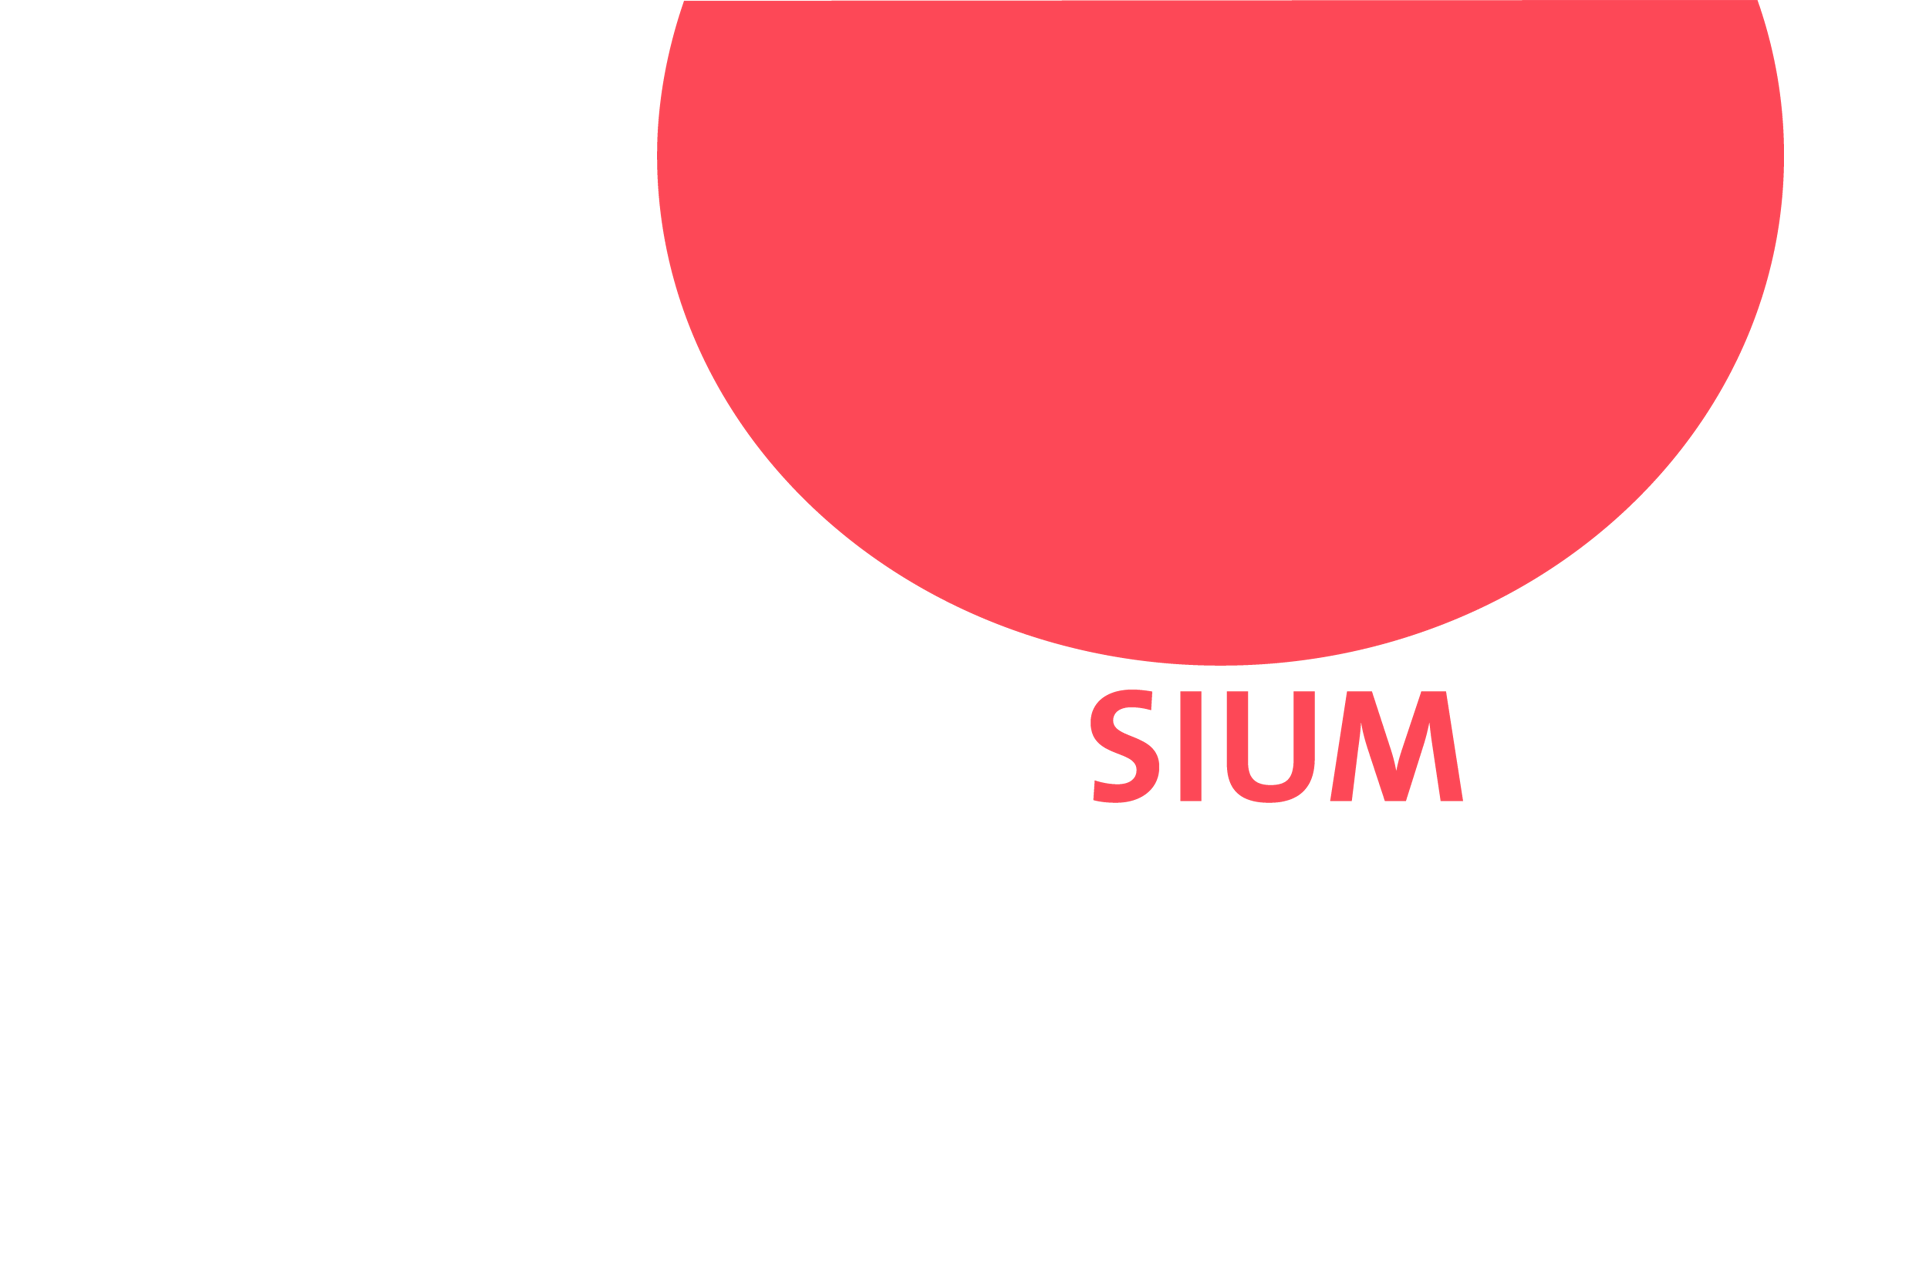 Sium-Logo. Leuchtend roter Ball oben im Anschnitt mit dem Wort „Sium“ darunter.